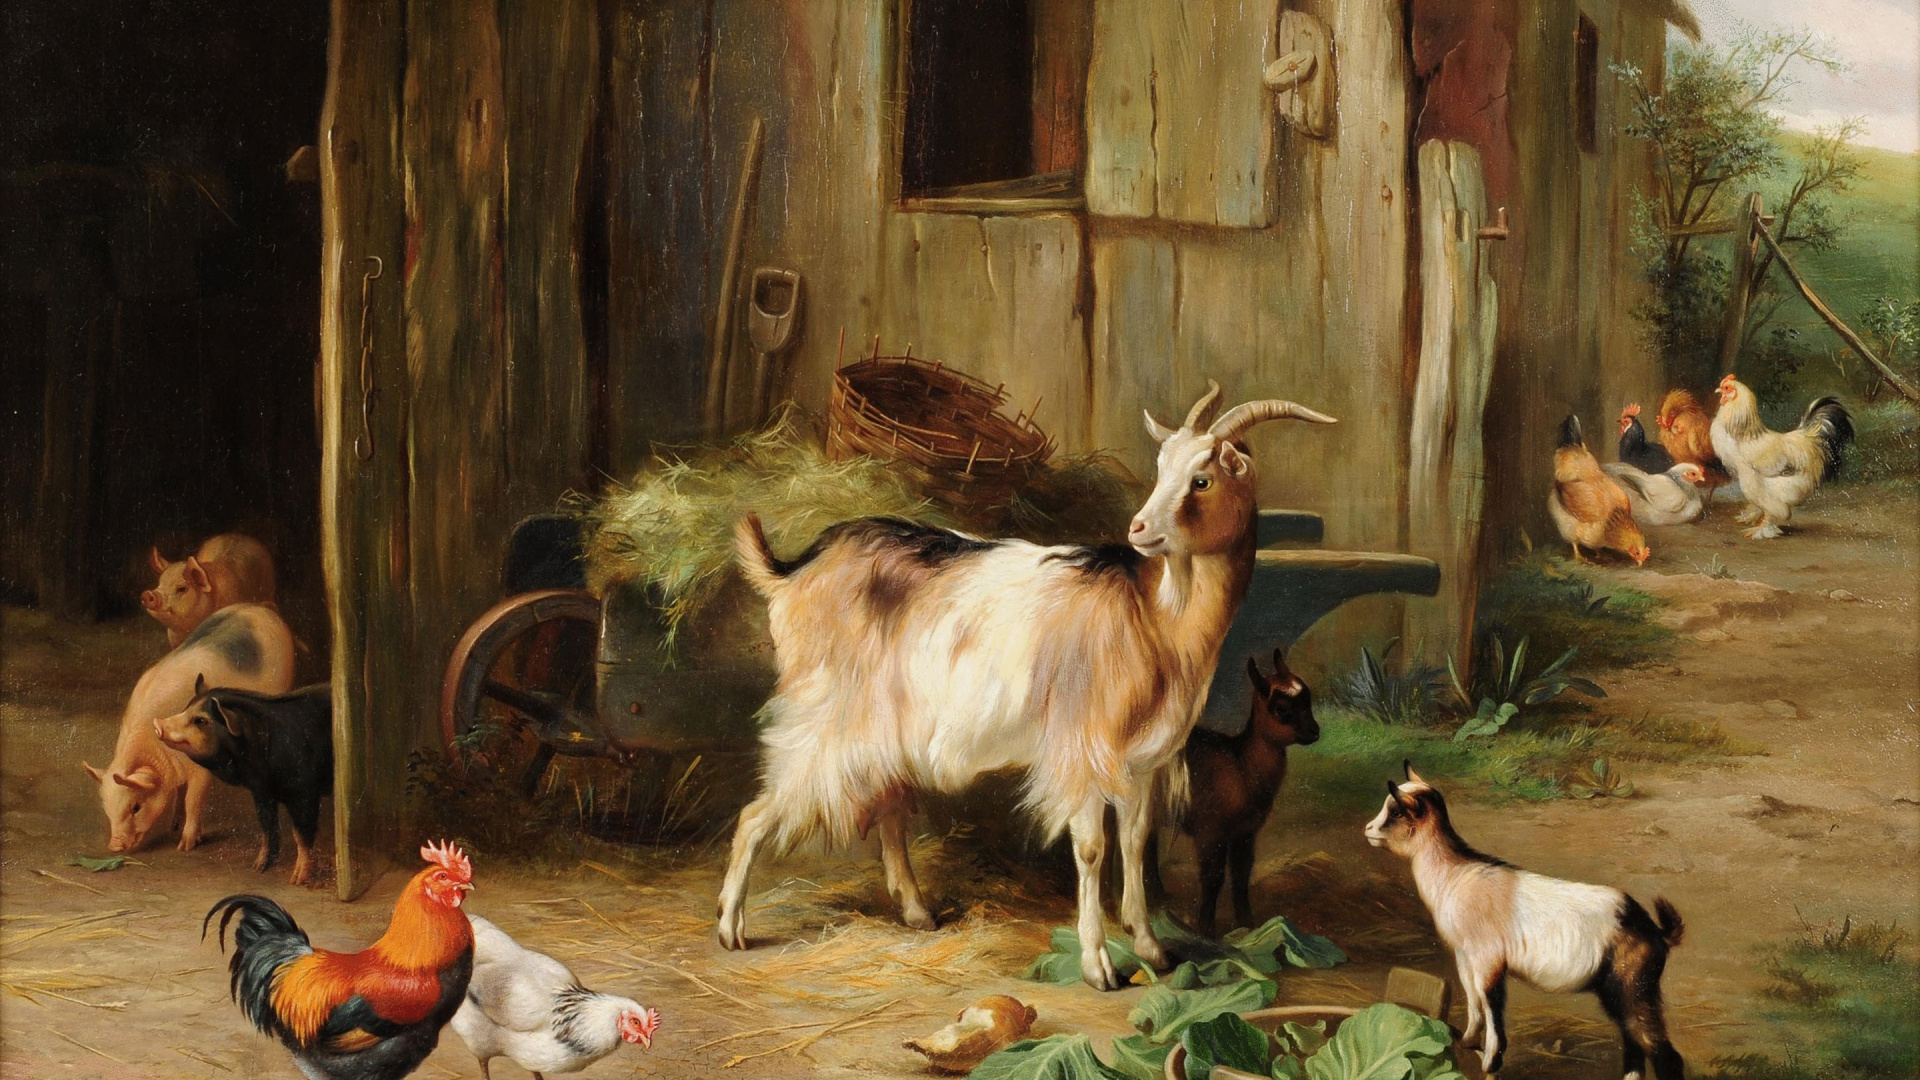 艺术, 艺术家, 绘画, 山羊, 牲畜 壁纸 1920x1080 允许